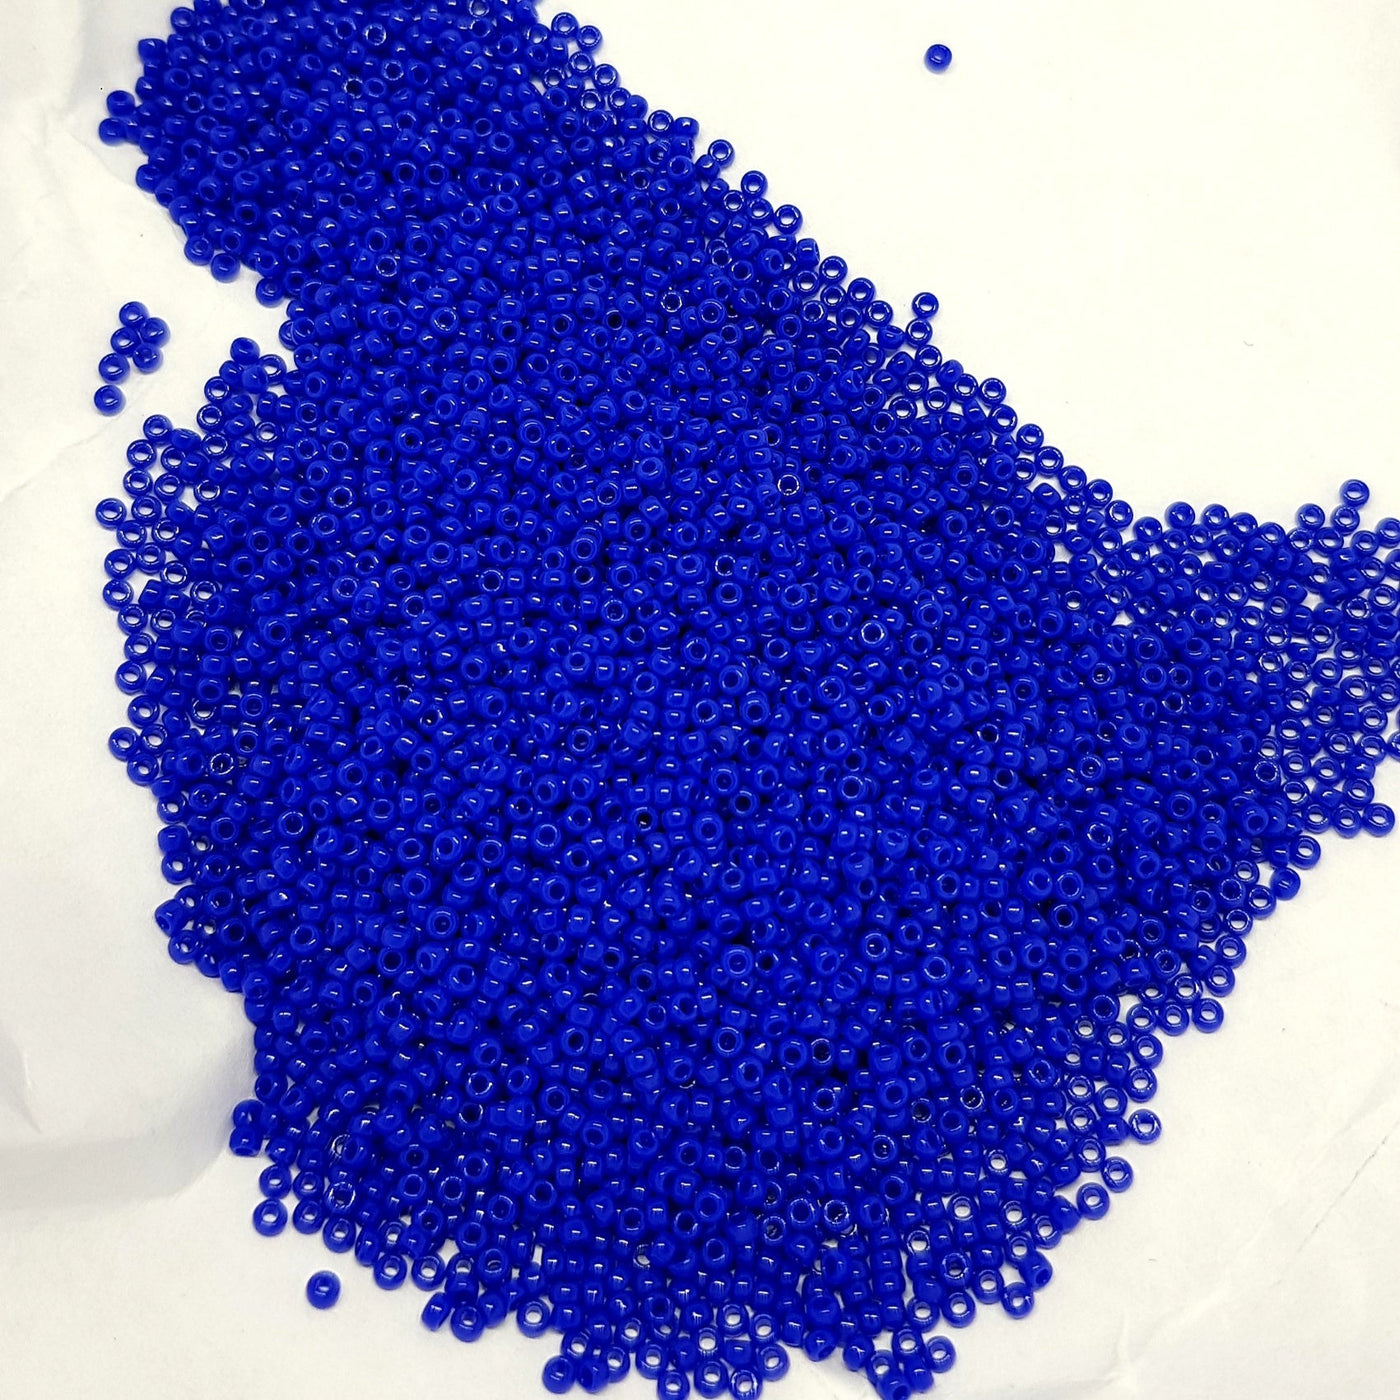 חרוזי מיוקי יפניים, גודל 15 - קטן ביותר (1.5 מ"מ) חור פנימי 0.7 מ"מ בצבע כחול